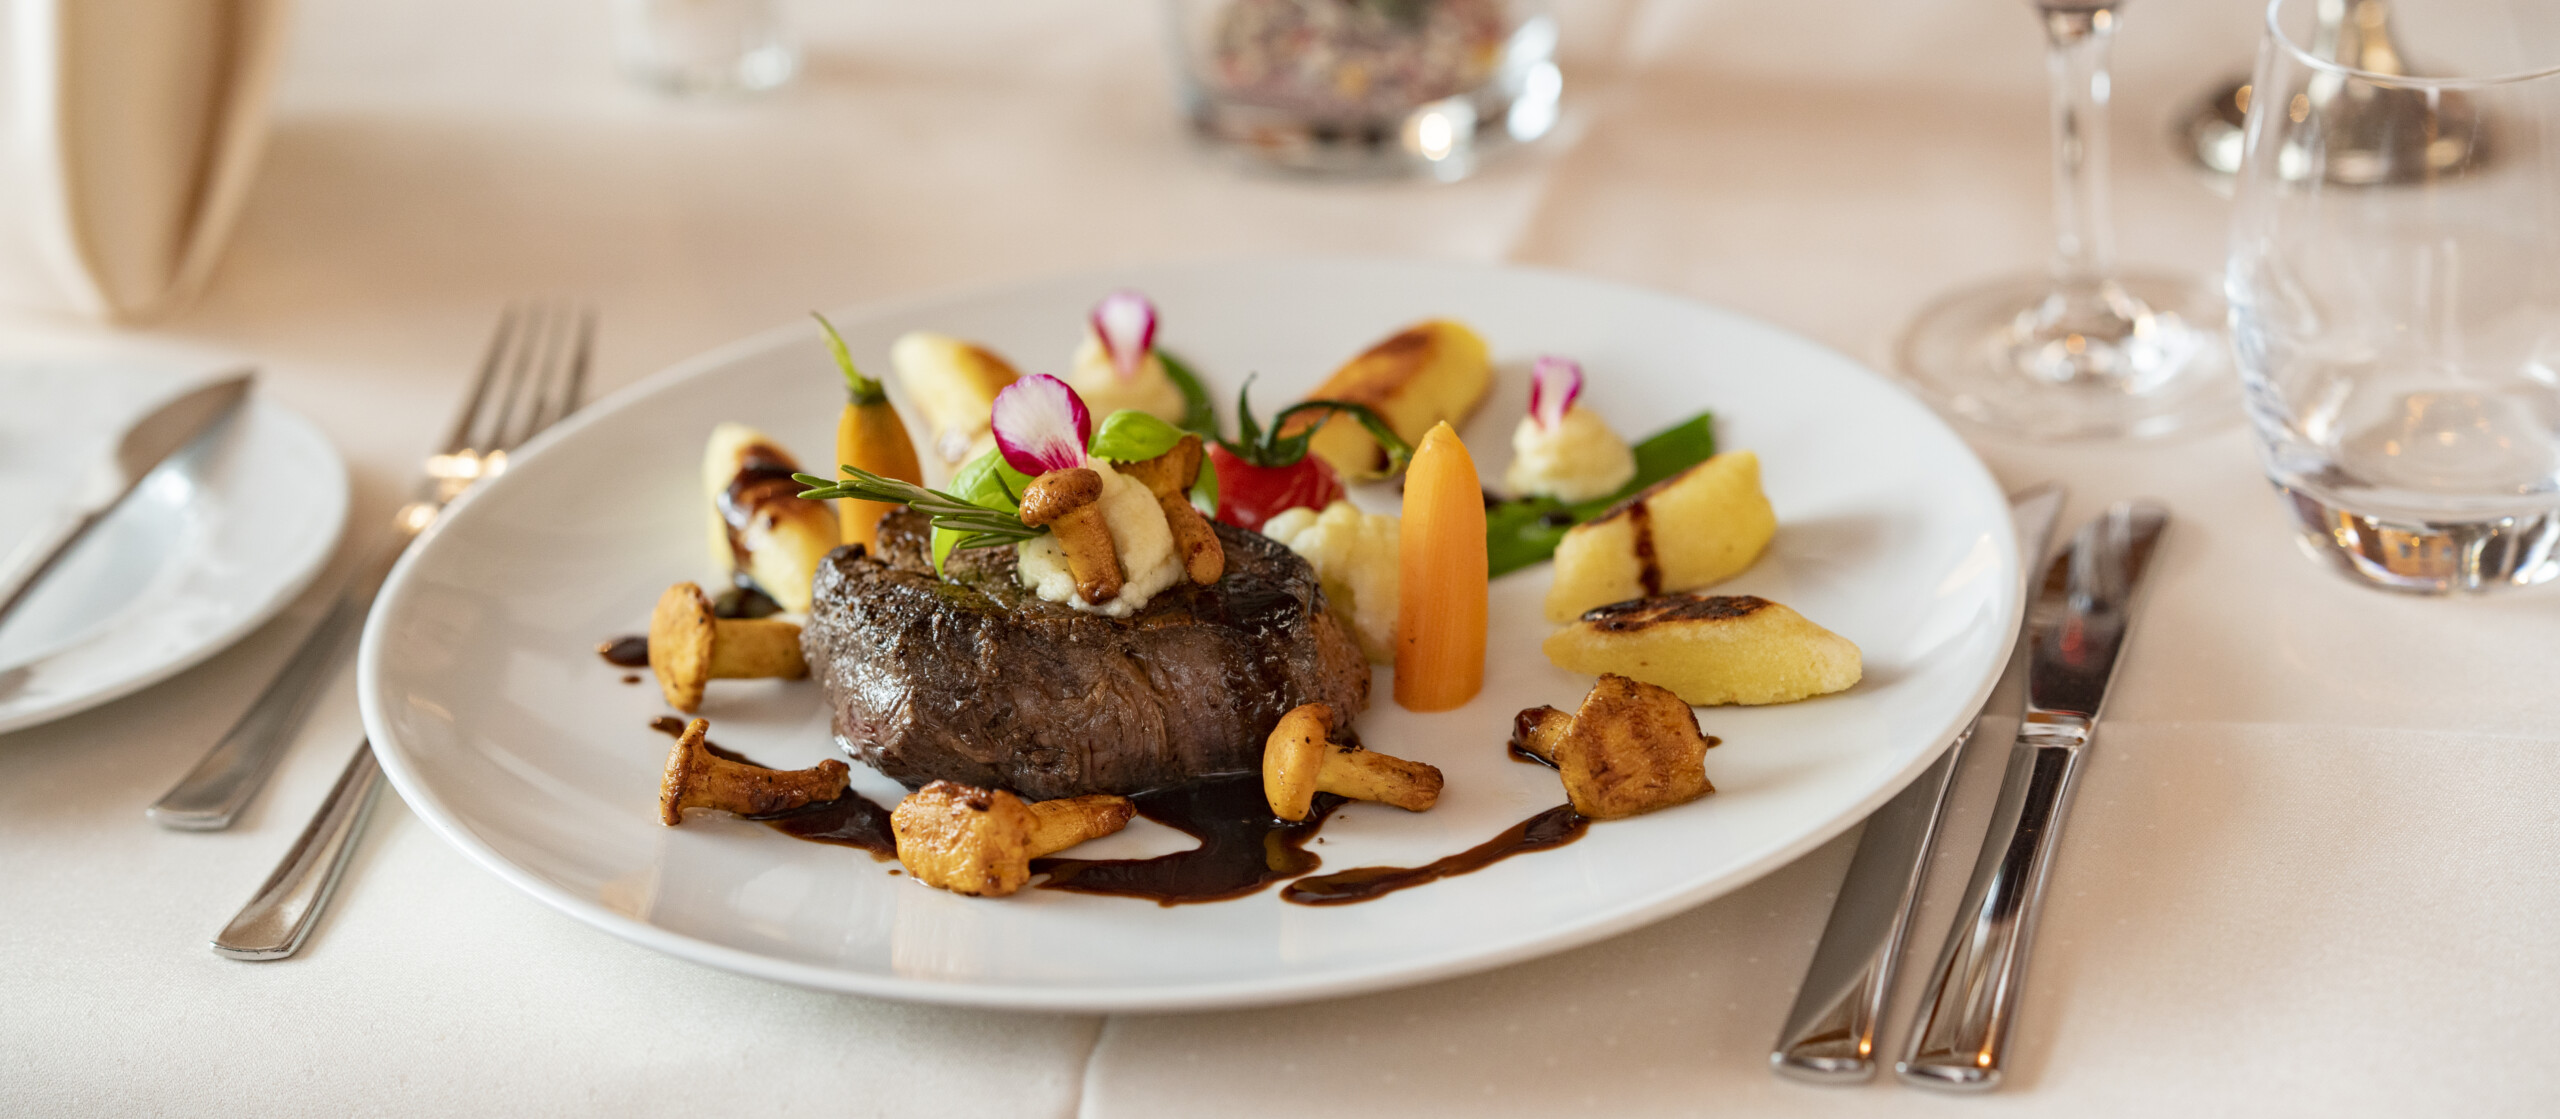 Teller mit Steak, Pfifferlingen, Karotten und Kartoffeln auf einem schön gedeckten Tisch.